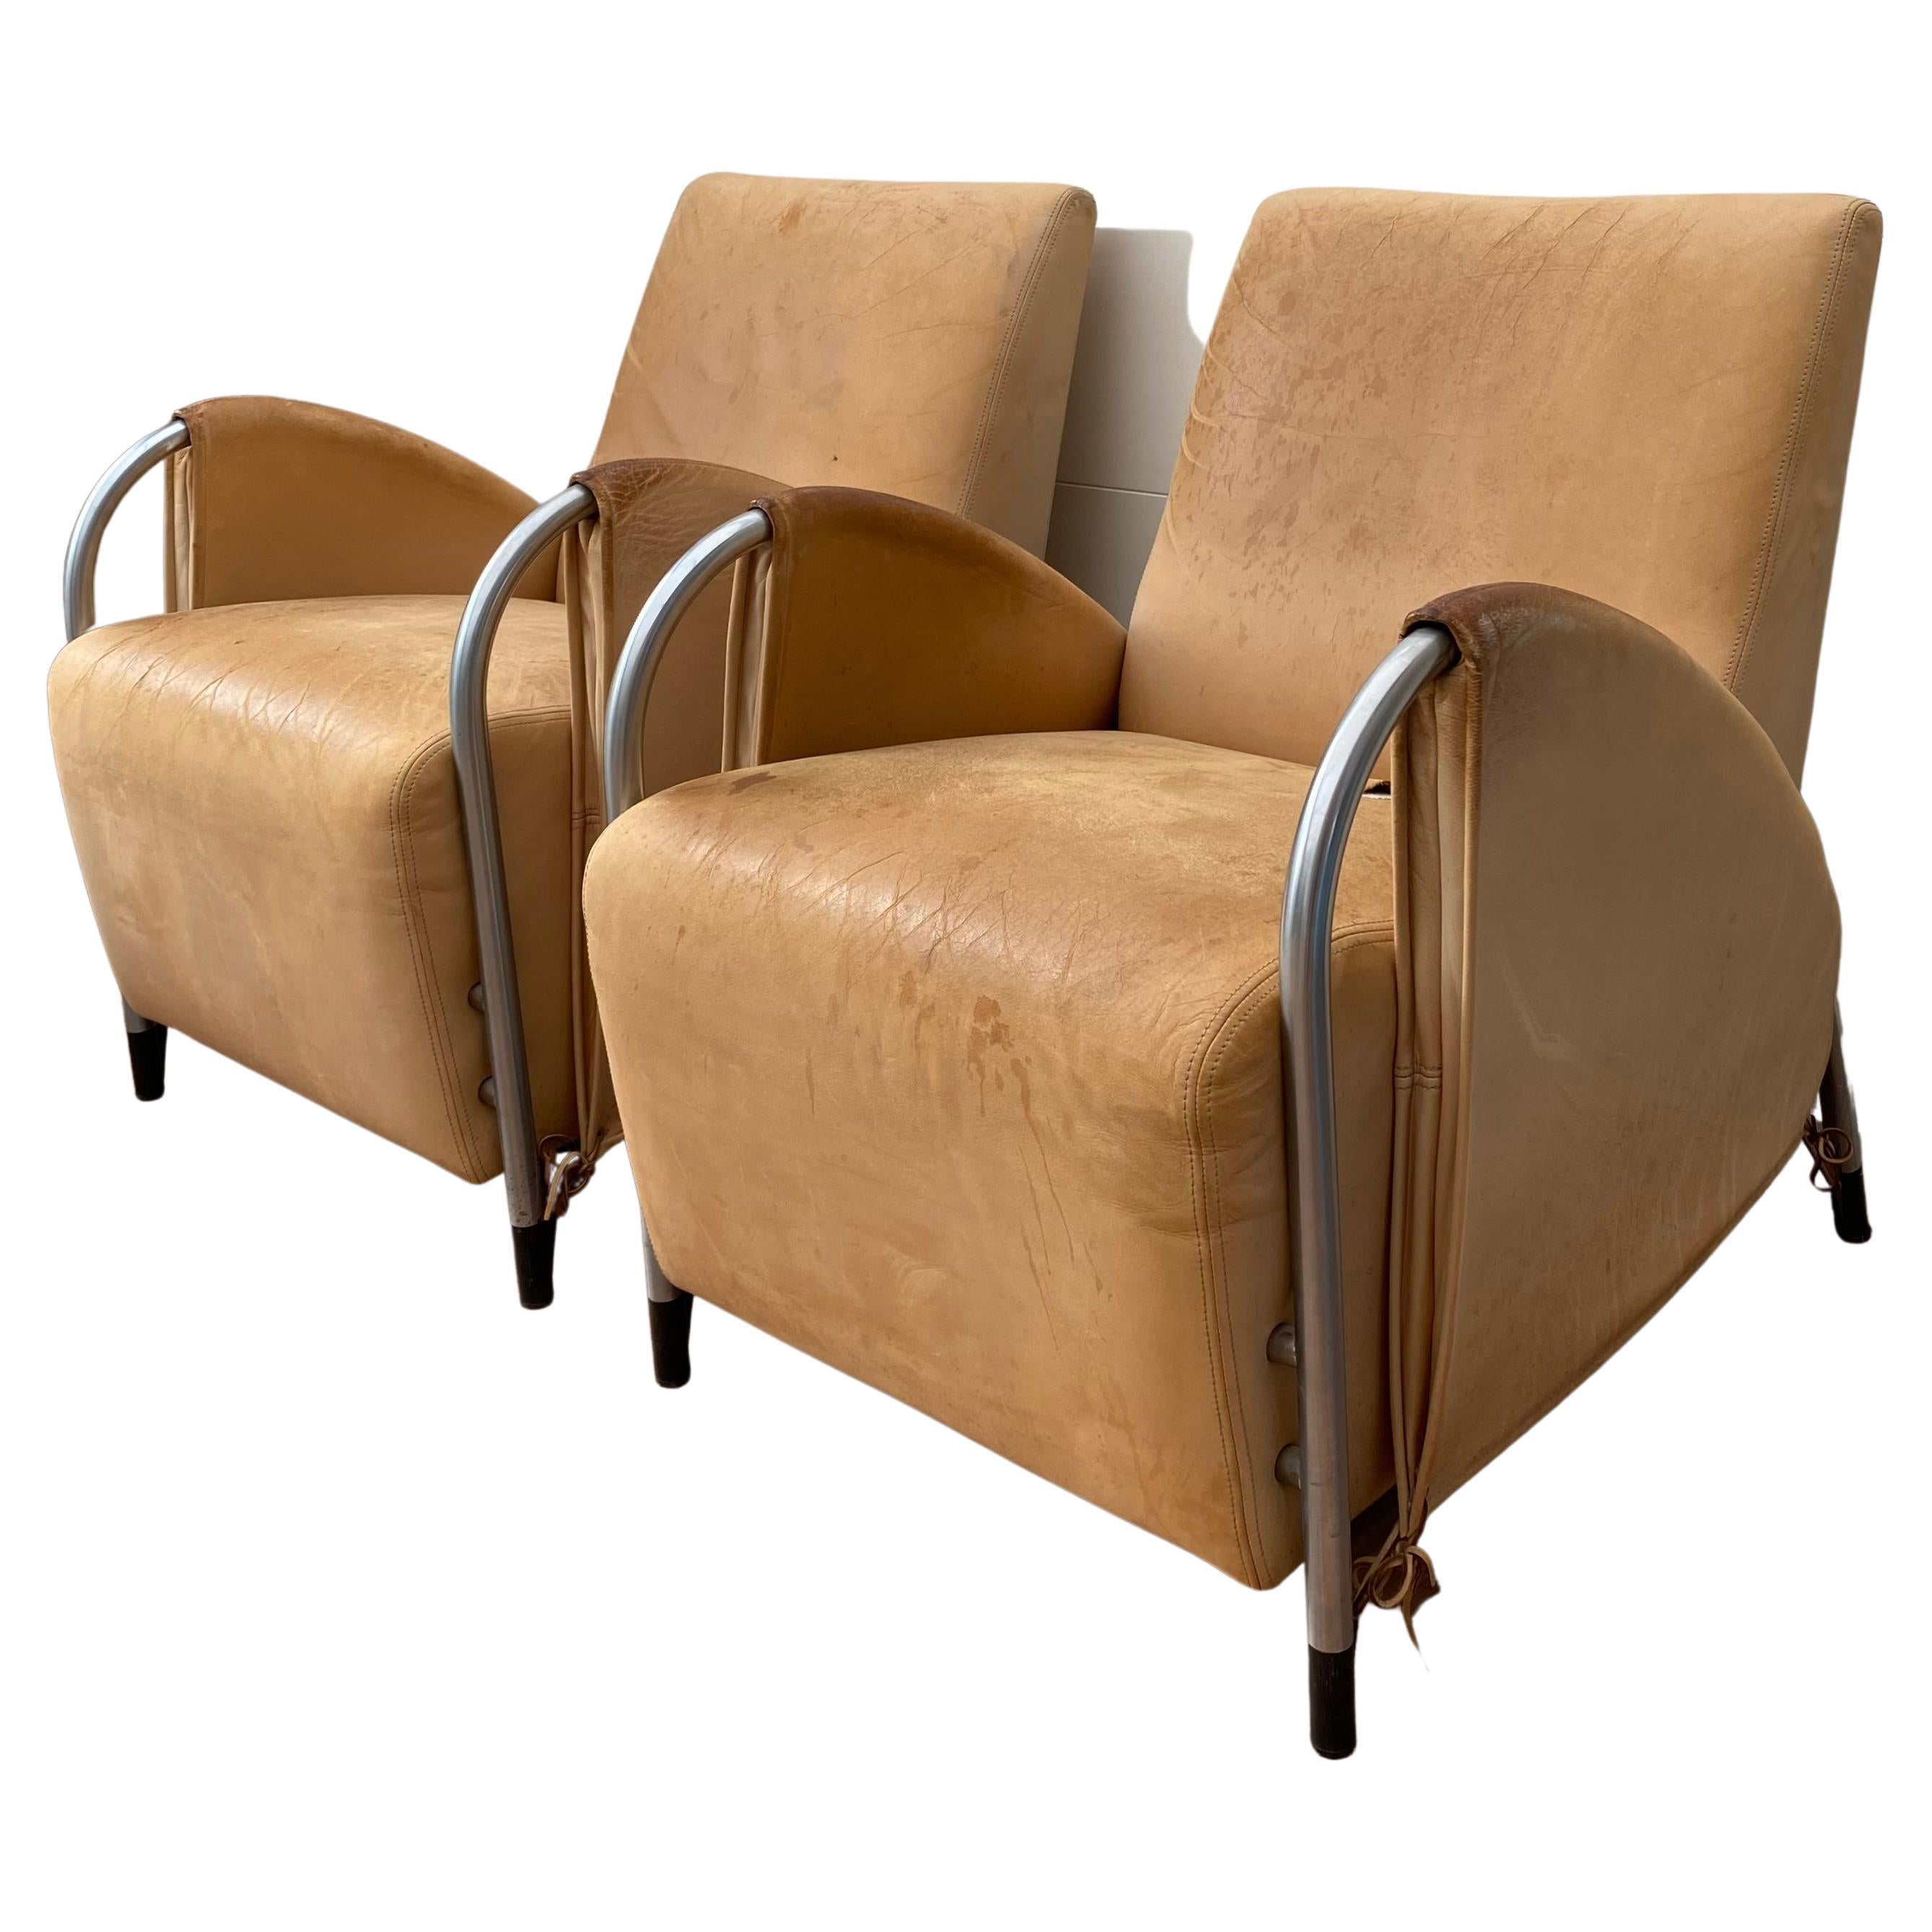 Art Deco, Machine Age Style Armchairs by Jan des Bouvrie for Gelderland